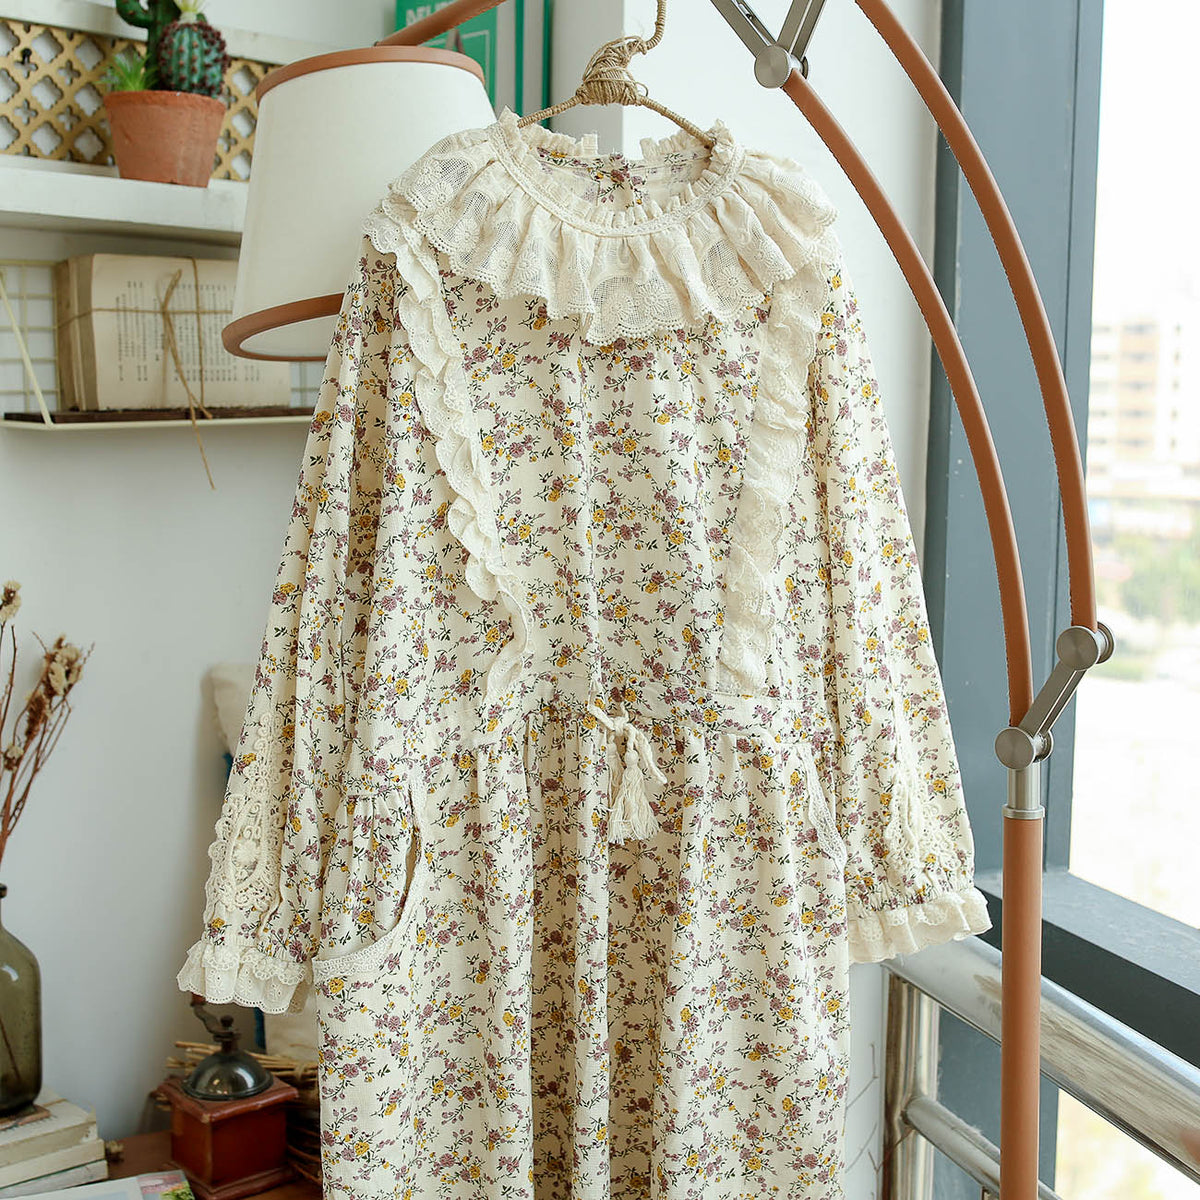 Cotton Lace Collar Vintage Floral Print Dress